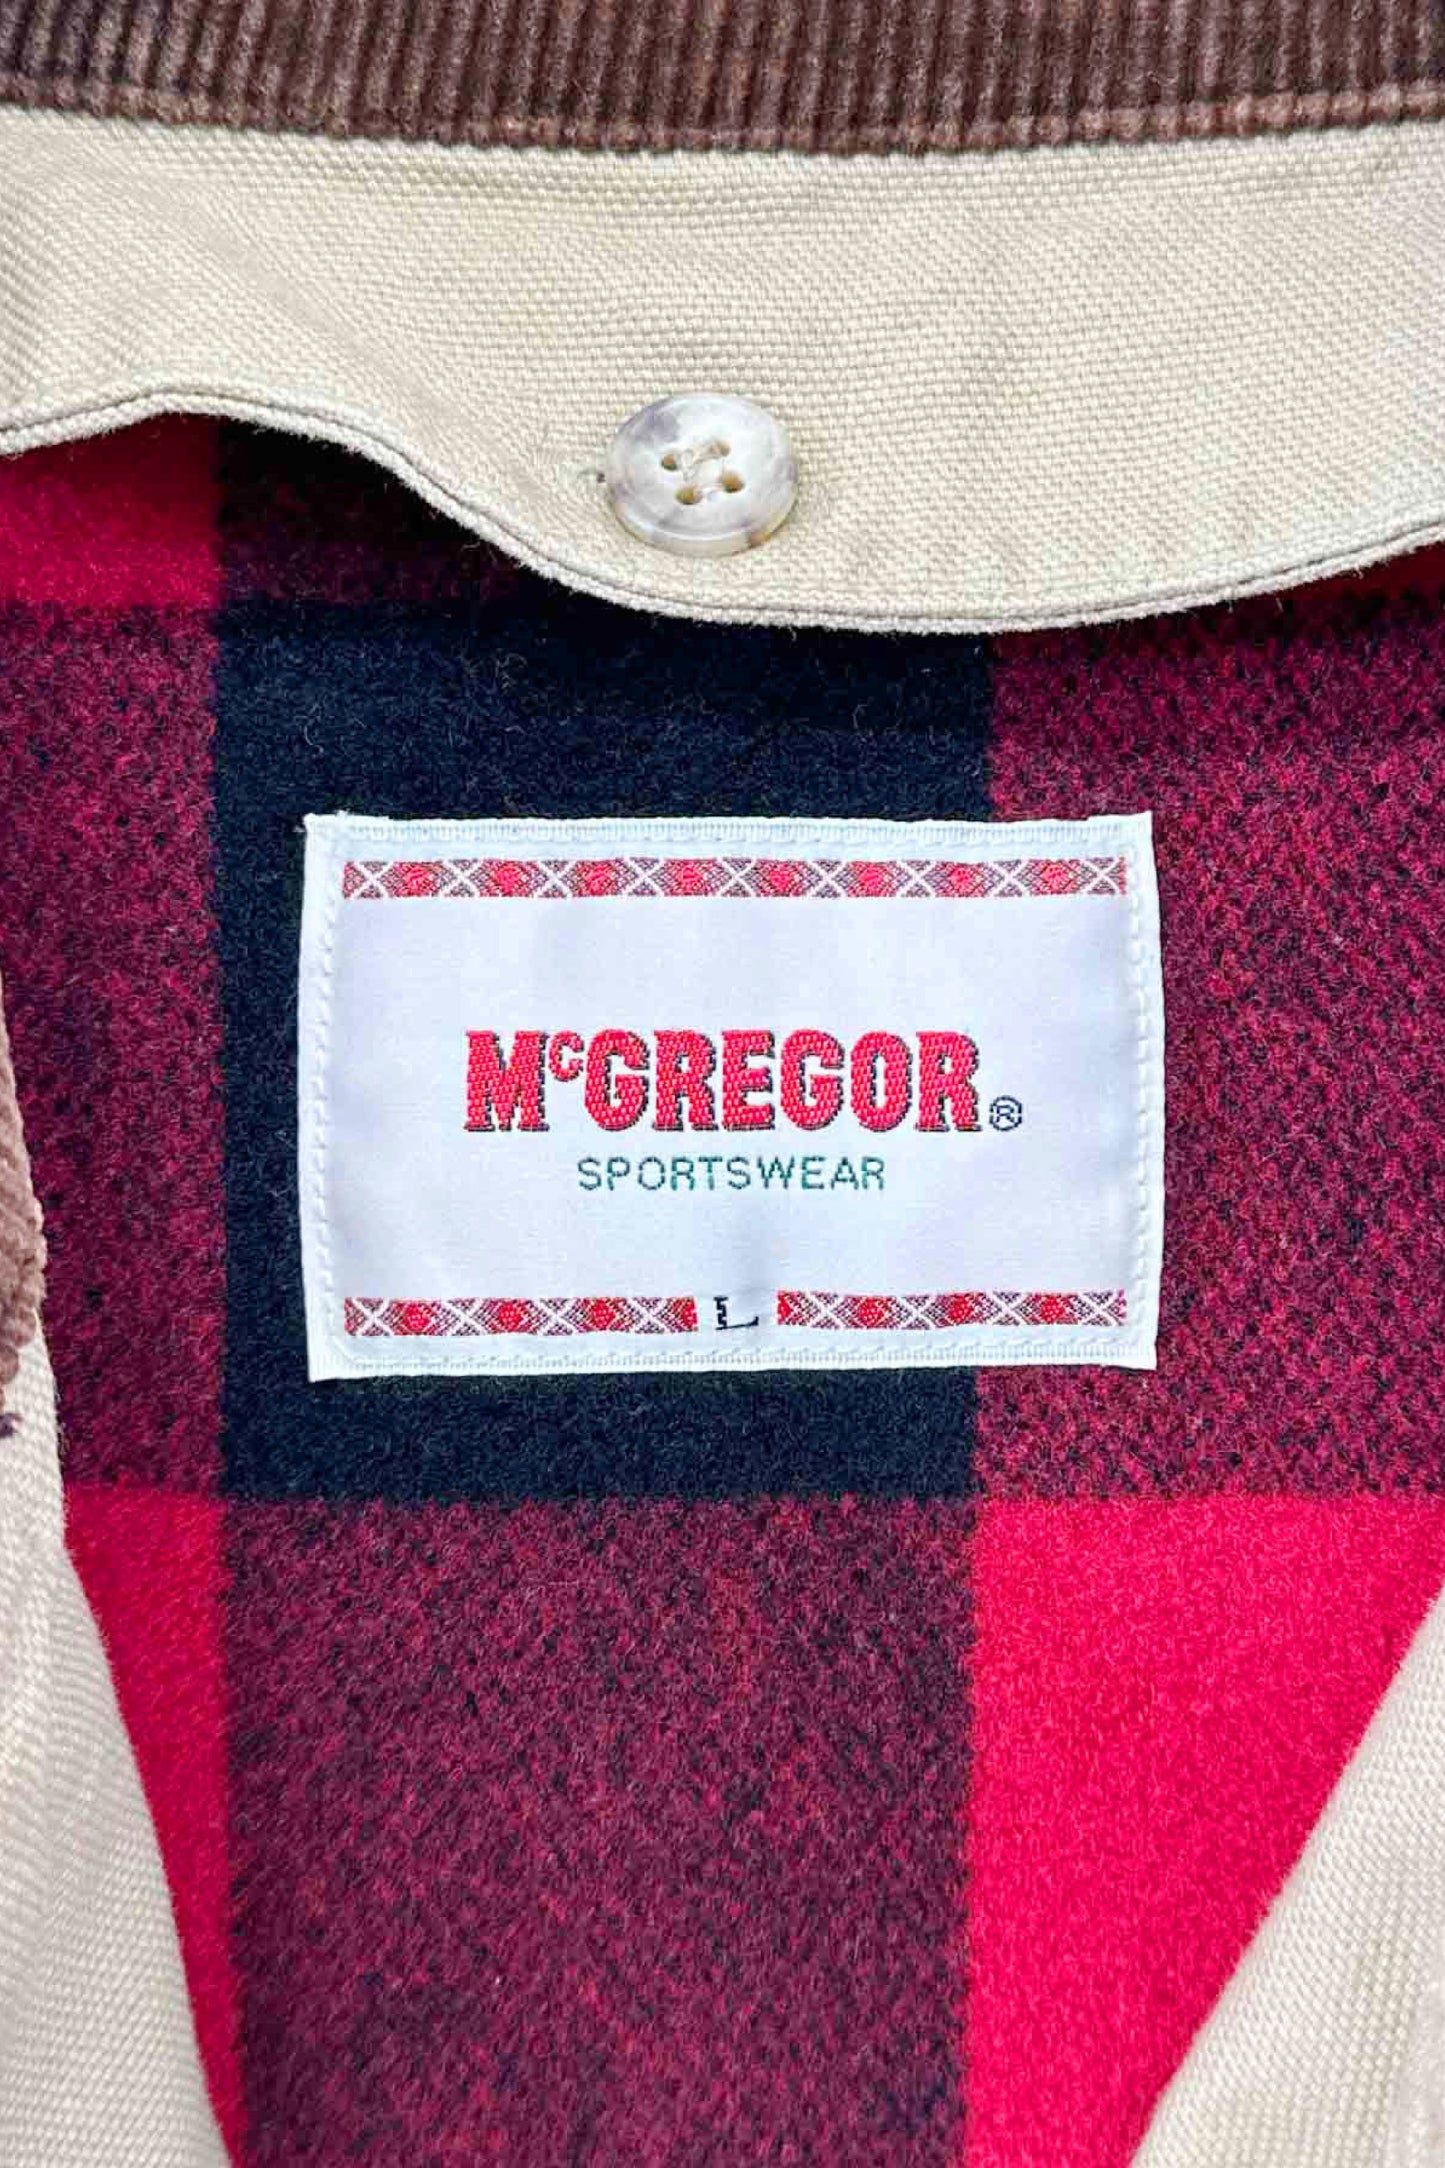 McGREGOR hunting jacket